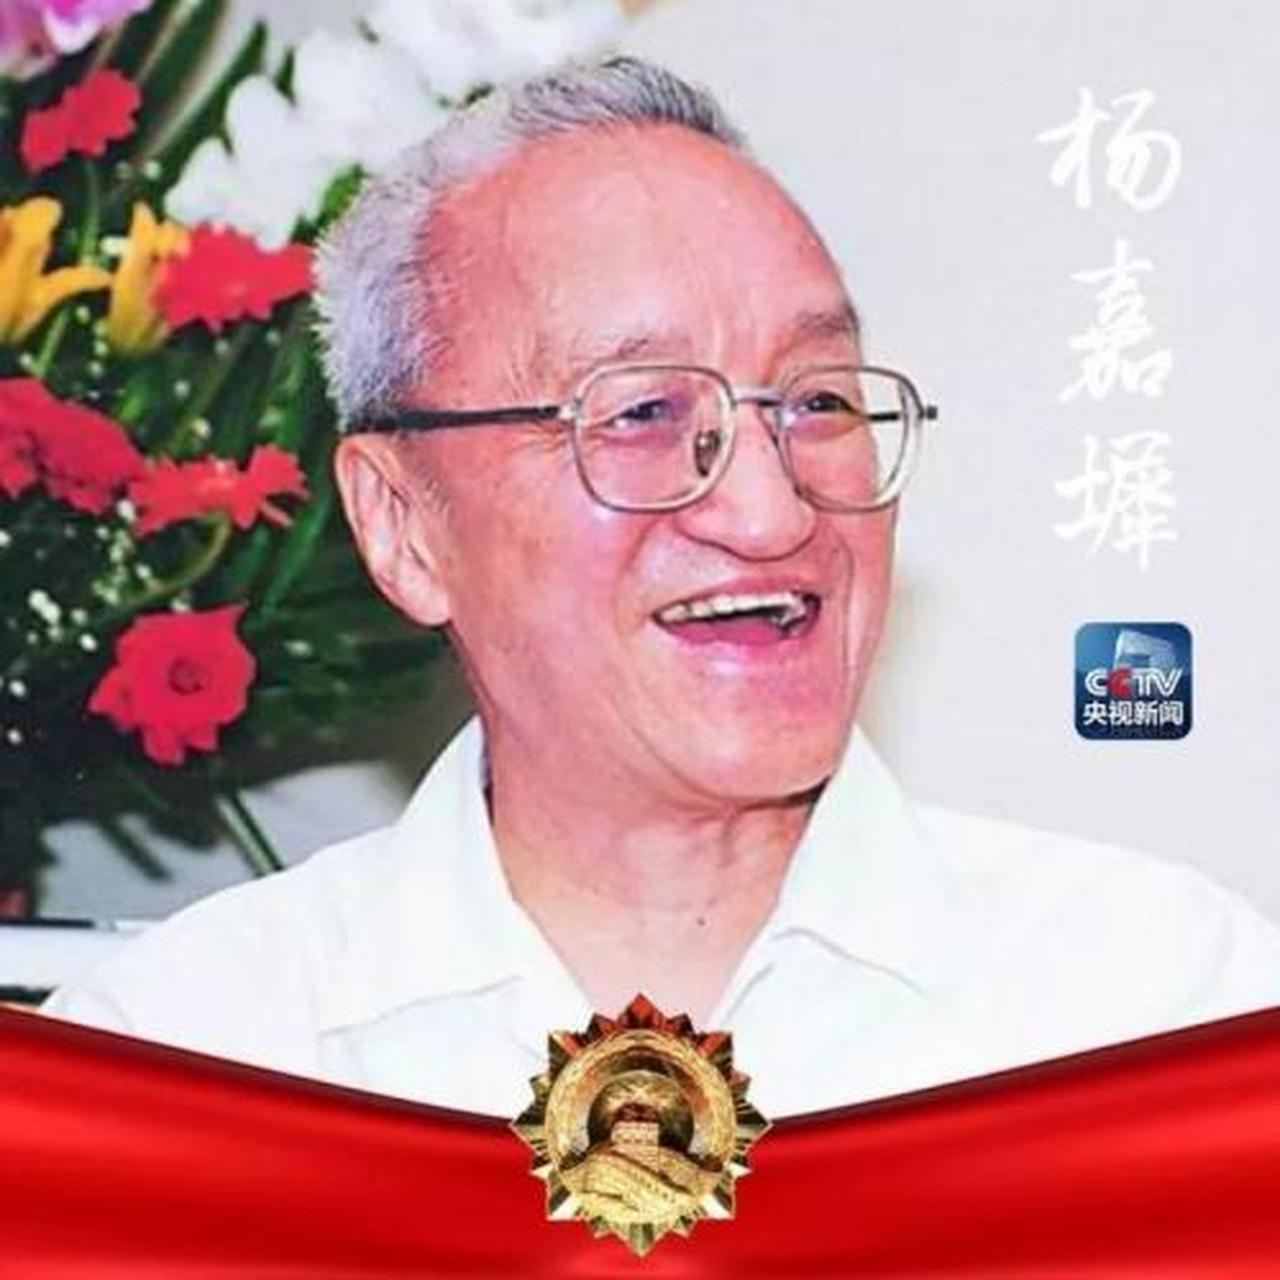 中国卫星之父是谁图片